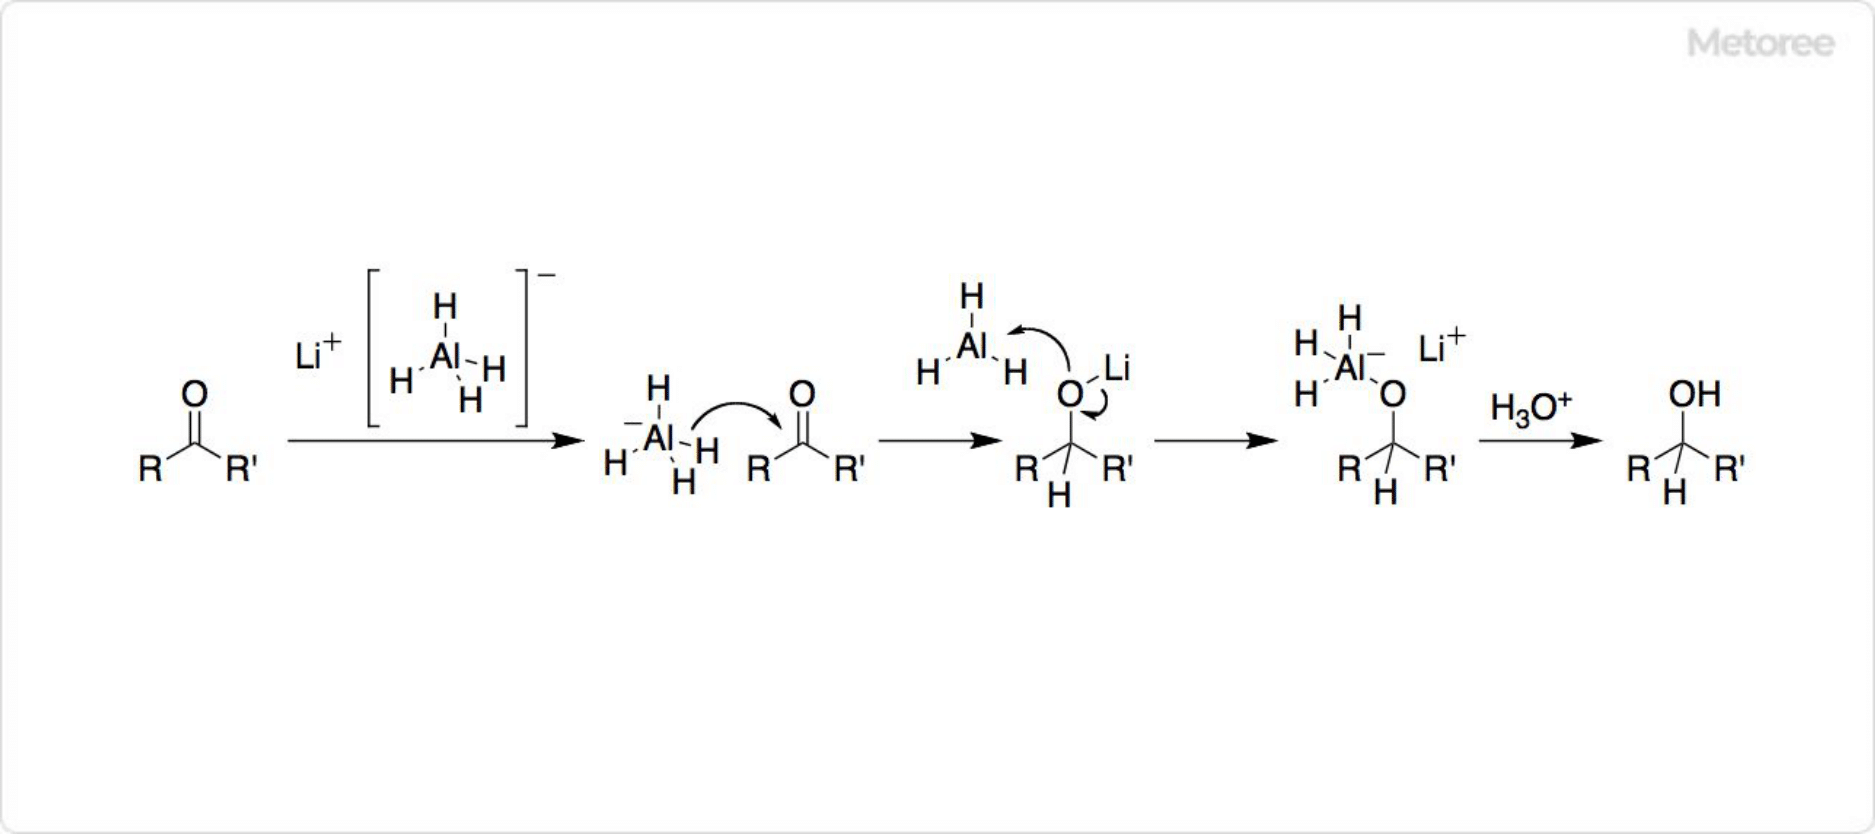 水素化リチウムアルミニウムの反応メカニズム